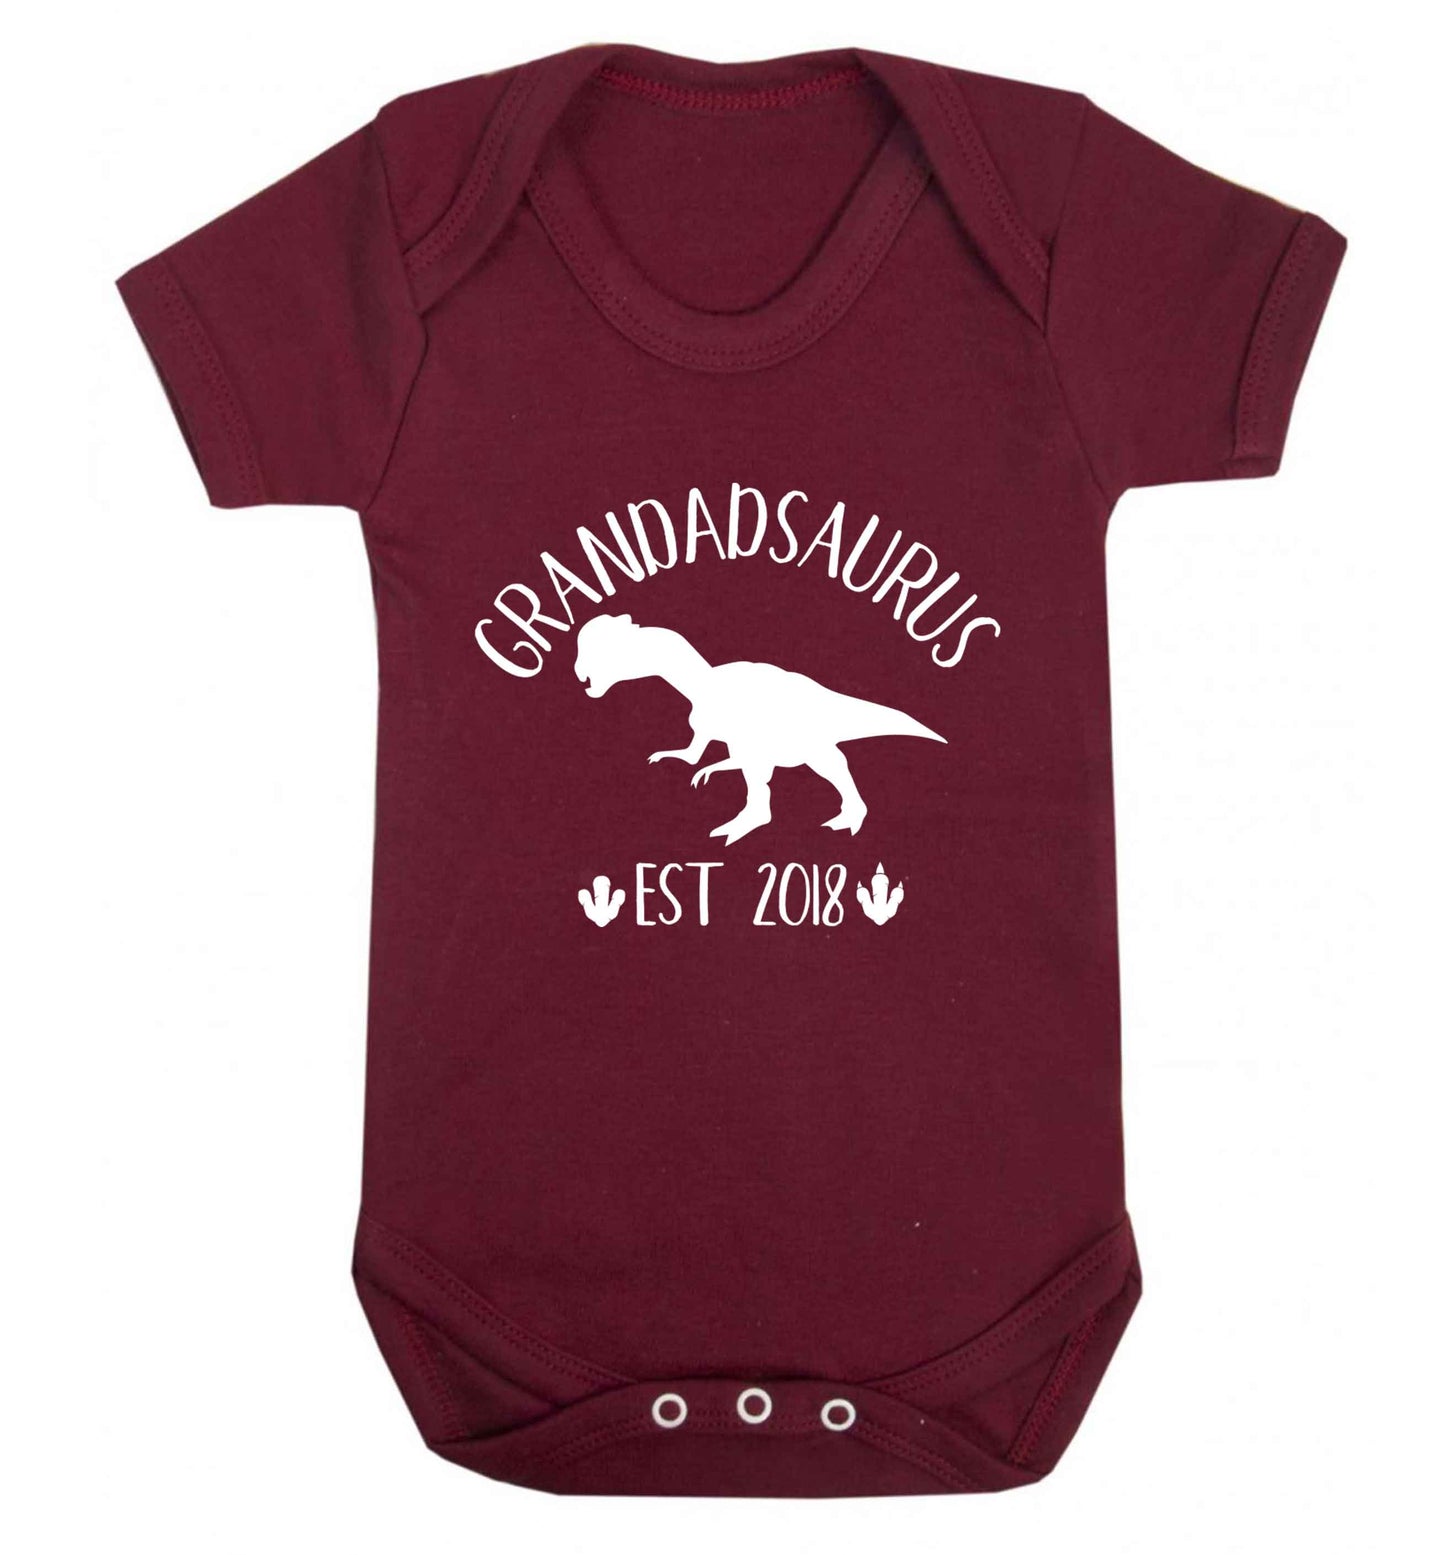 Personalised grandadsaurus since (custom date) Baby Vest maroon 18-24 months